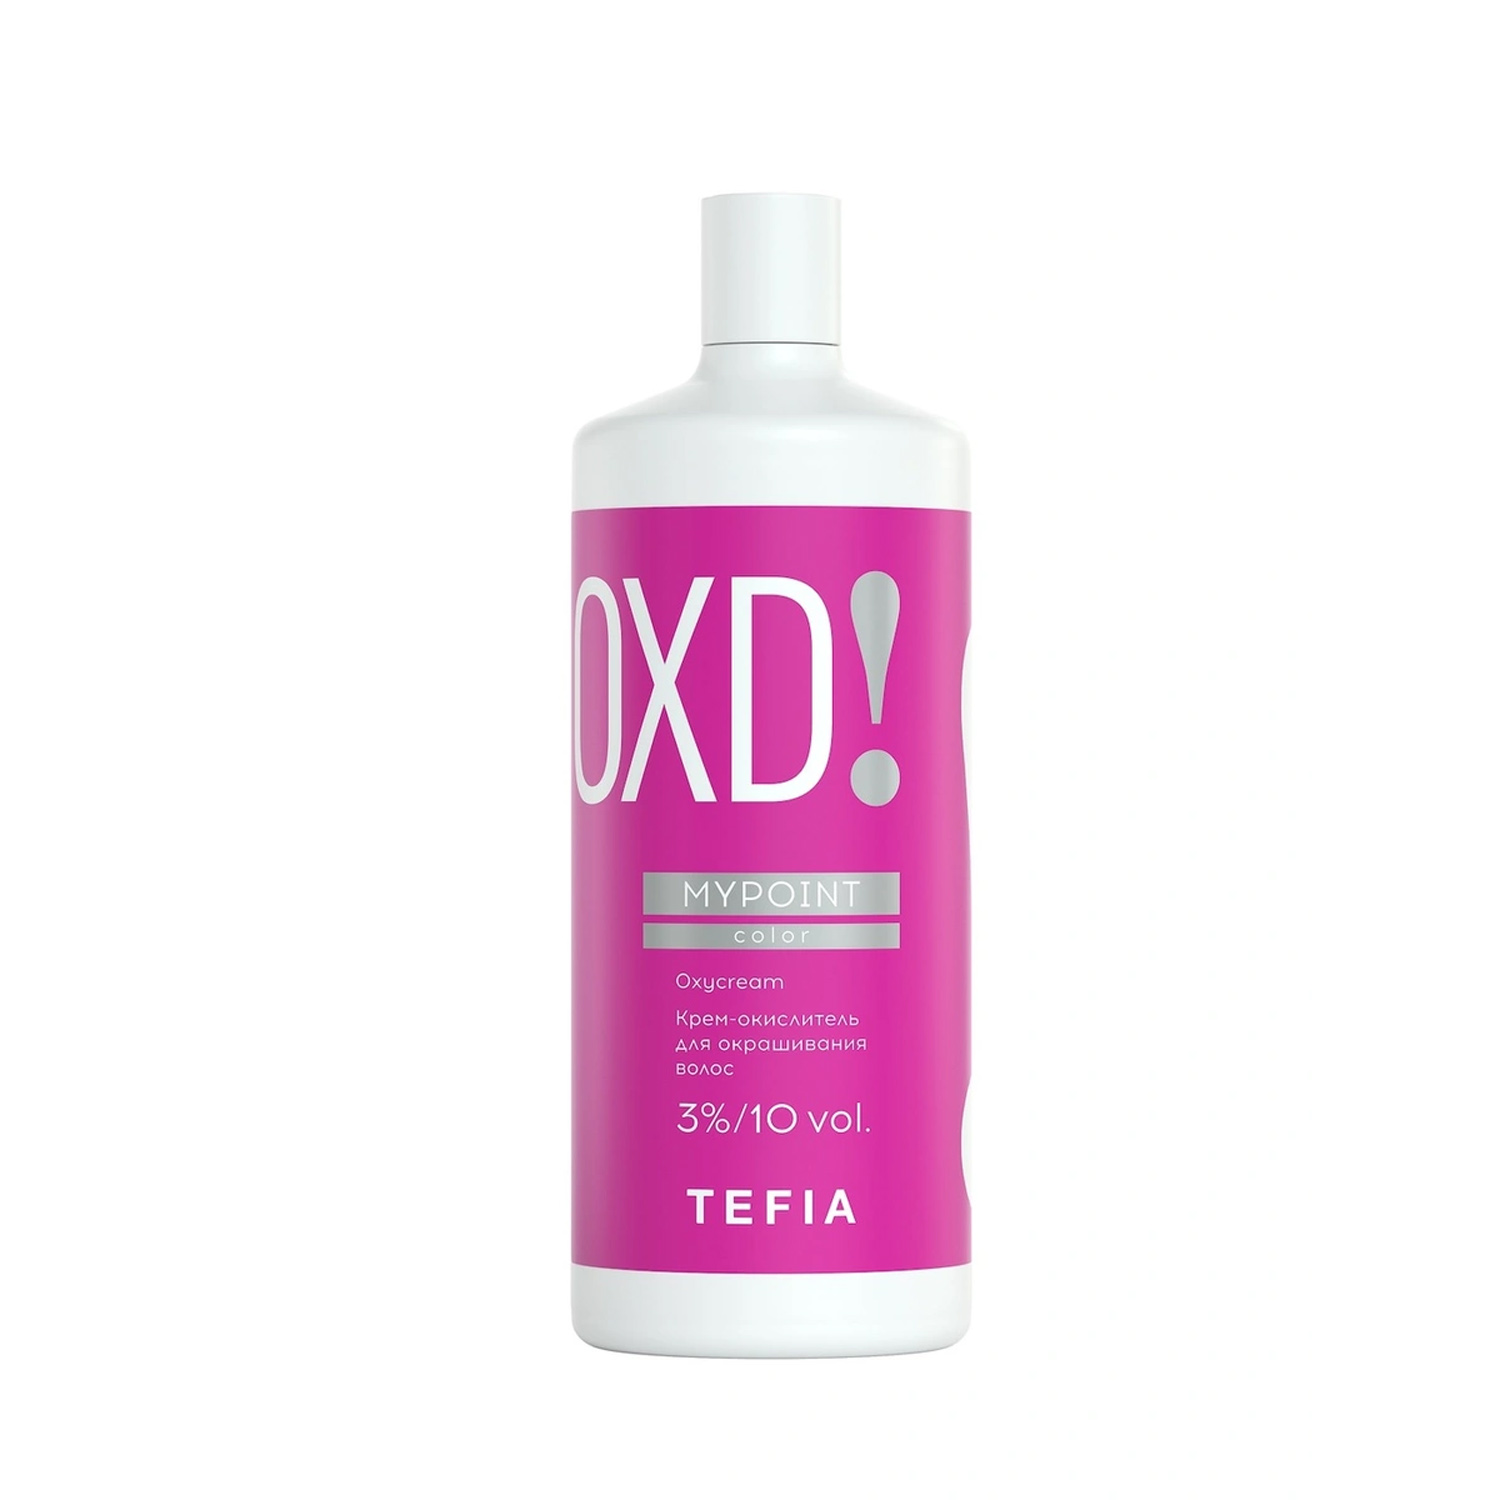 Купить Tefia Крем-окислитель для окрашивания волос 3%/10 vol. 900 мл (Tefia, Mypoint)